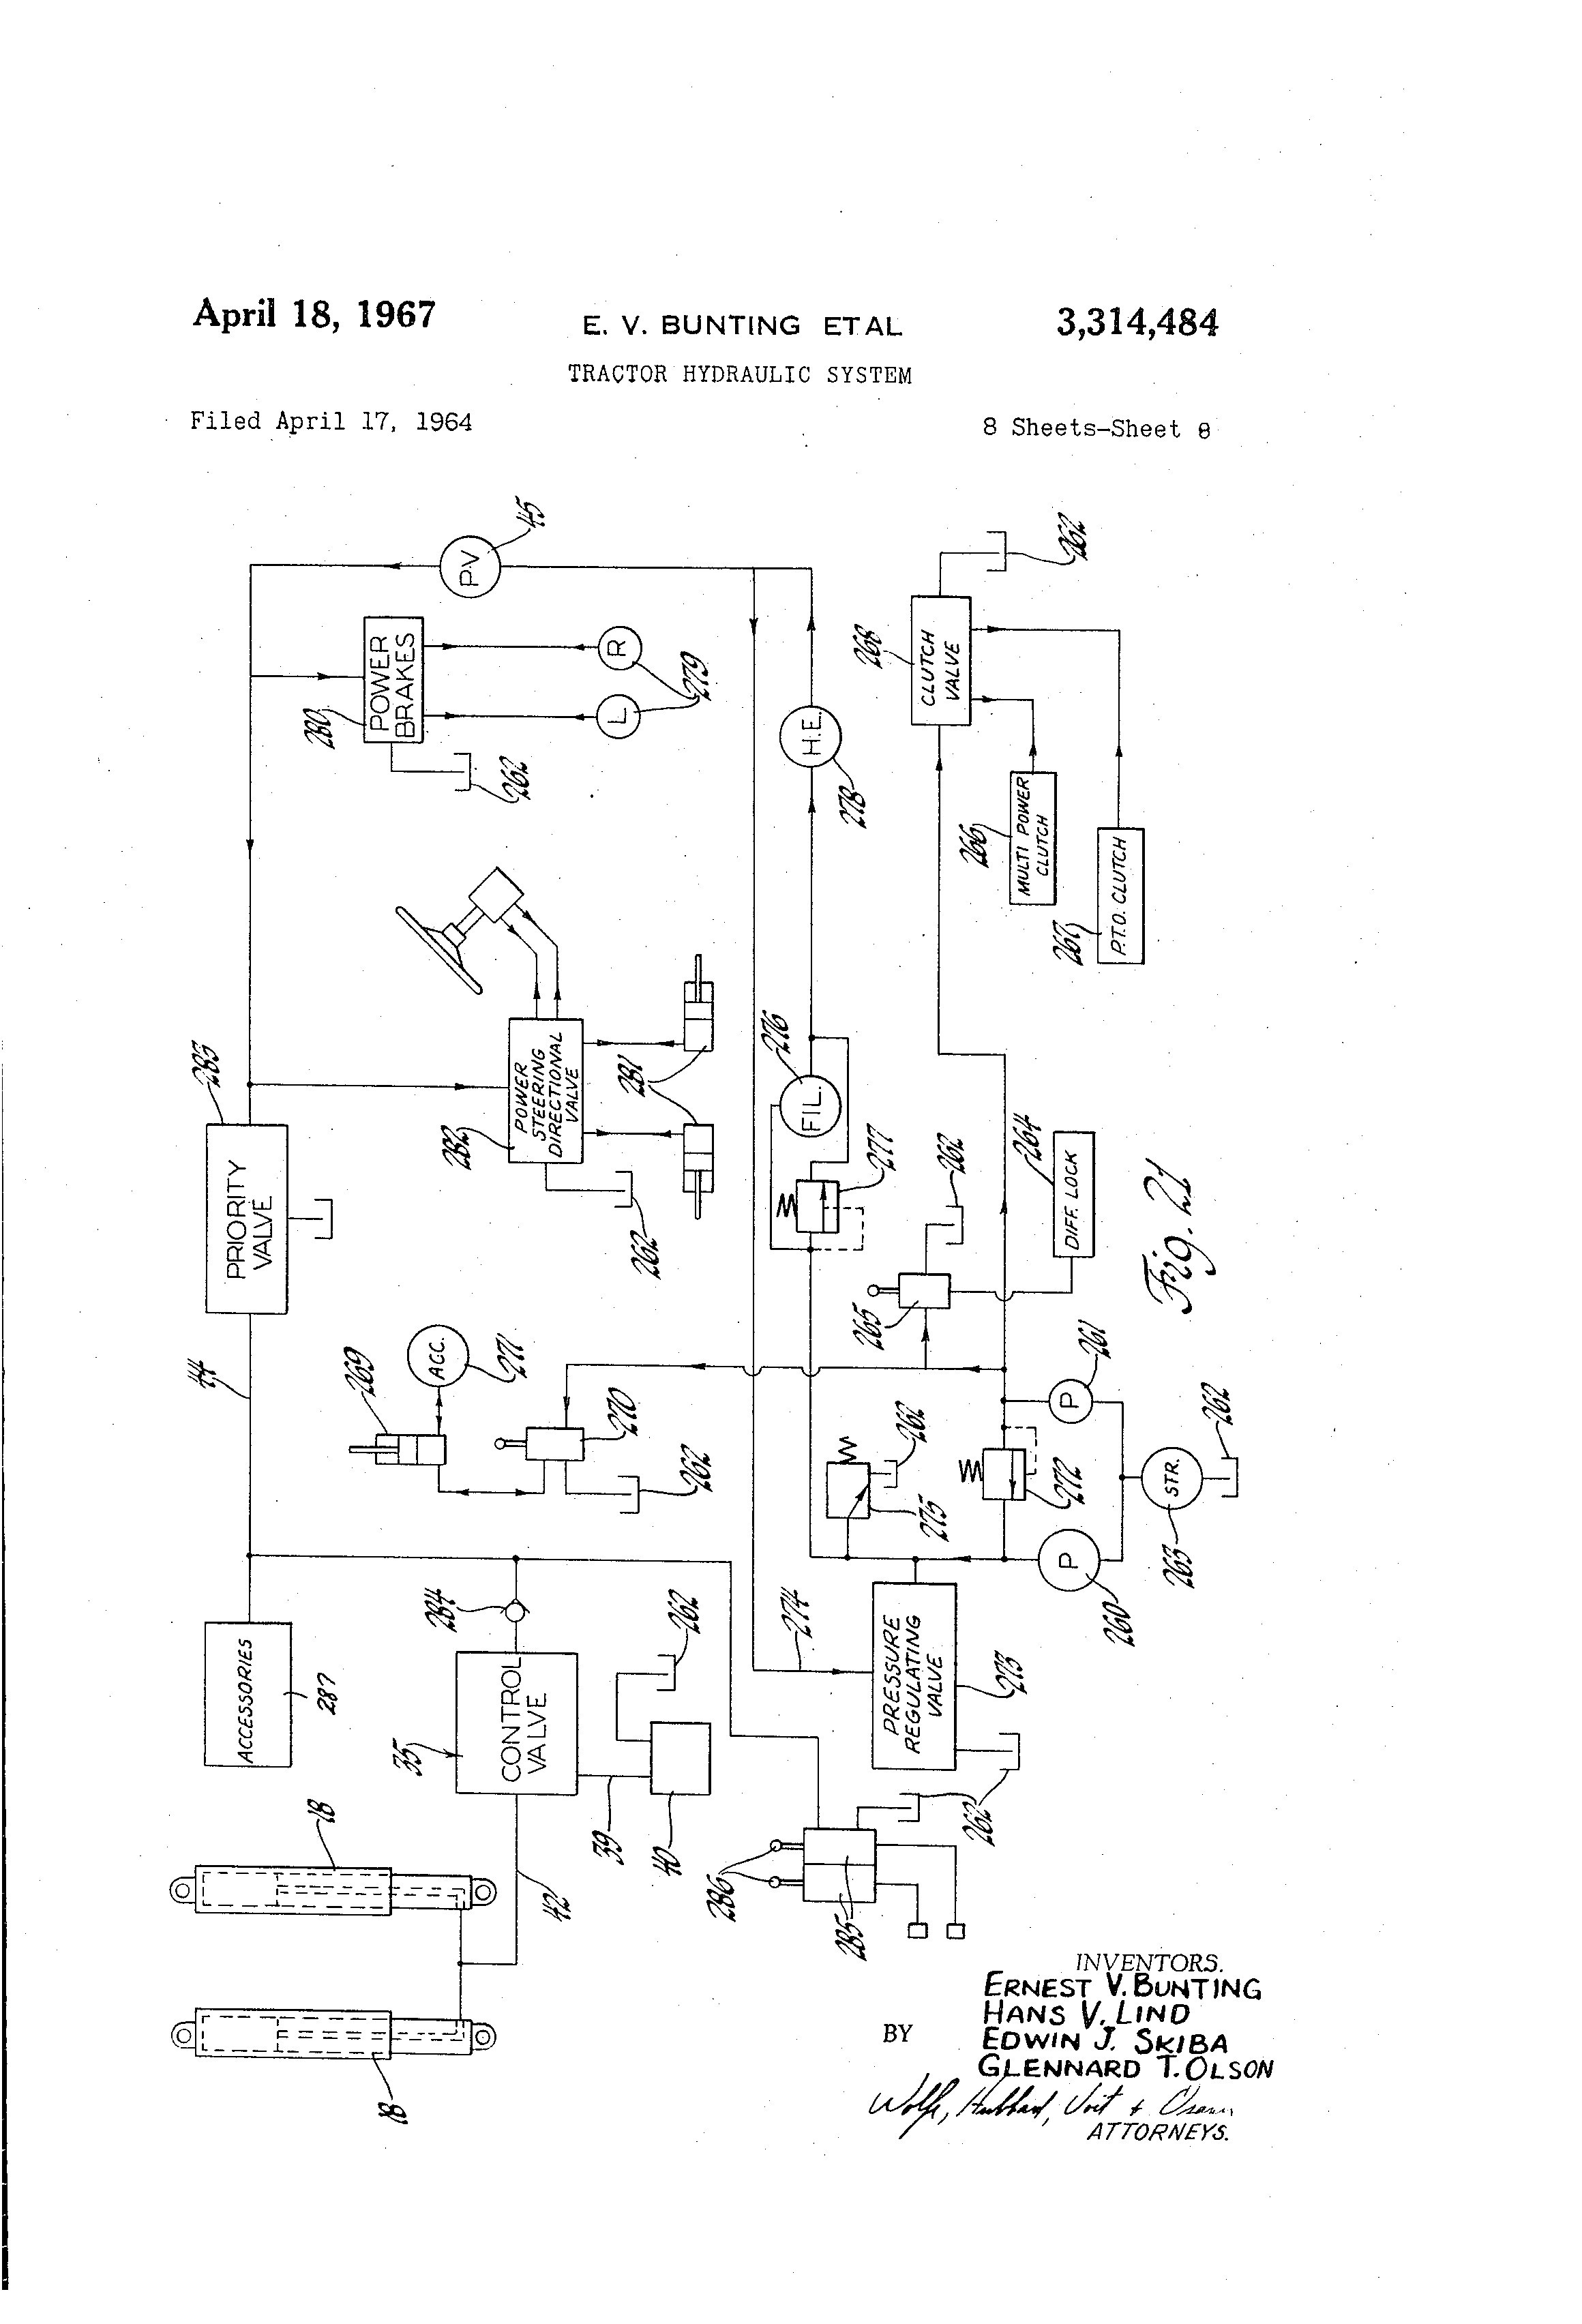 mf 285 wiring diagram trusted wiring diagram u2022 rh soulmatestyle co Massey Ferguson 135 Wiring Diagram Massey Ferguson 165 Wiring Diagram